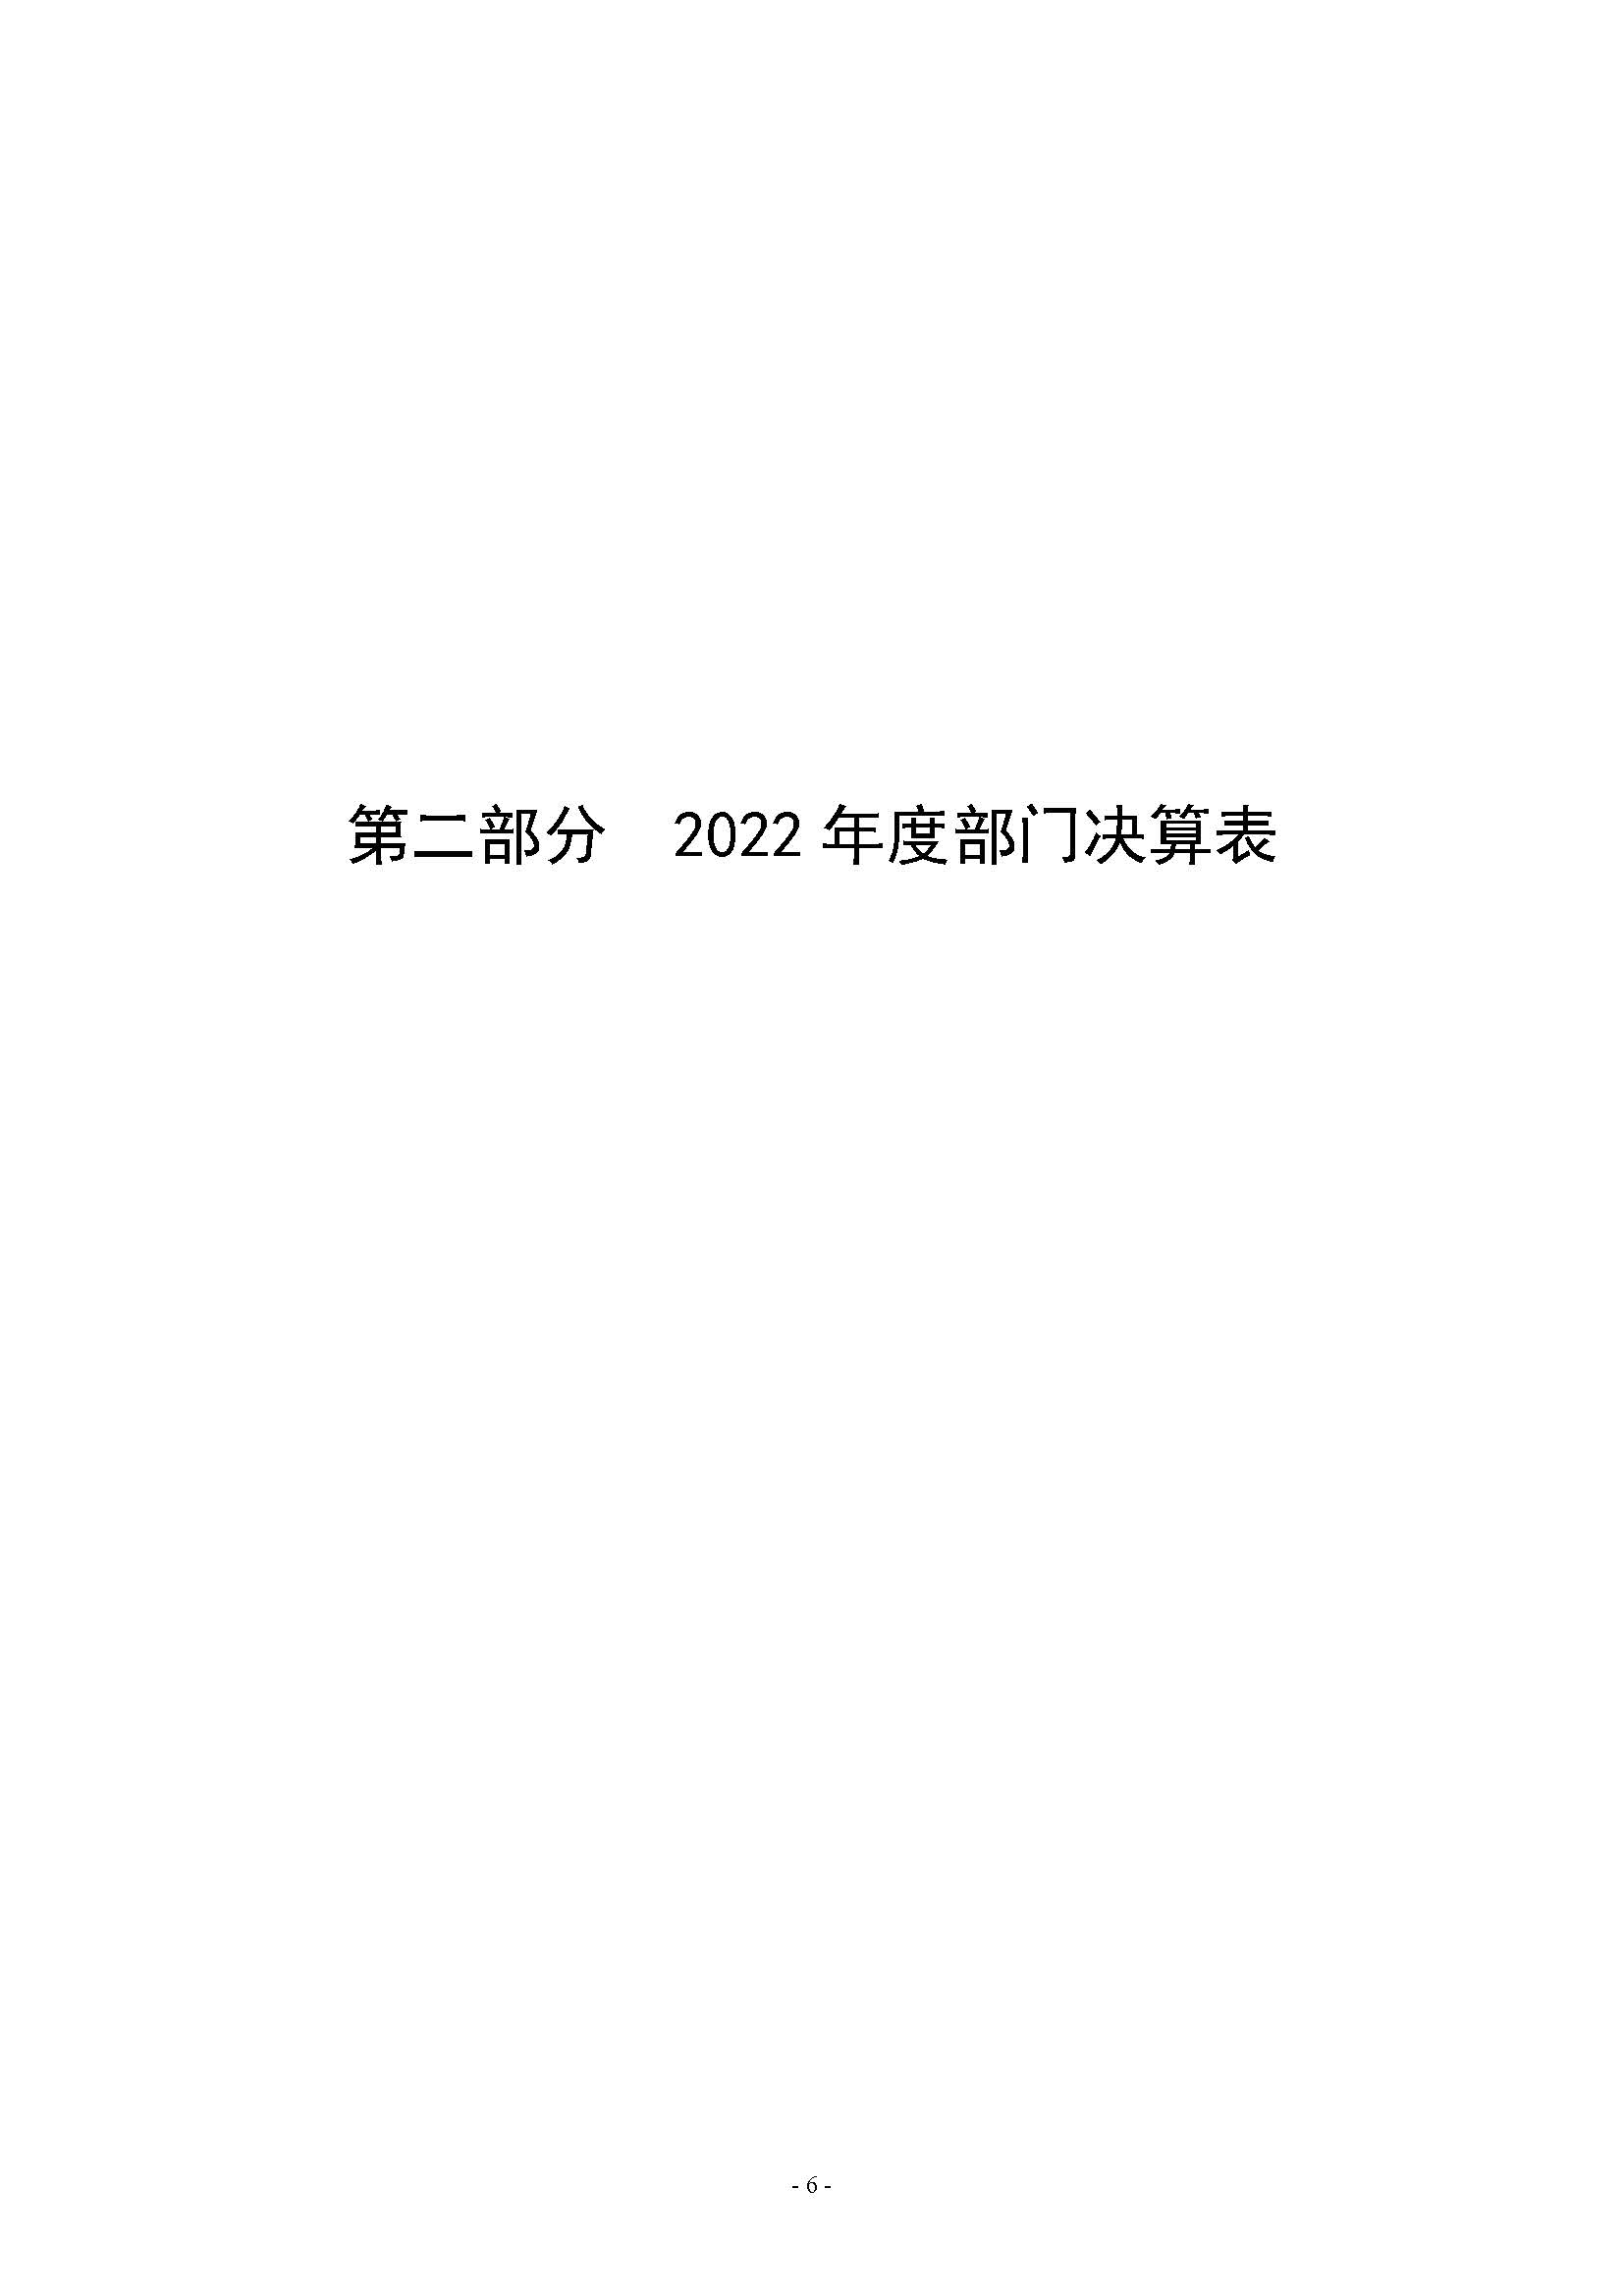 河南省水利科学研究院2022年年度省直部门决算公开(2)_页面_06.jpg